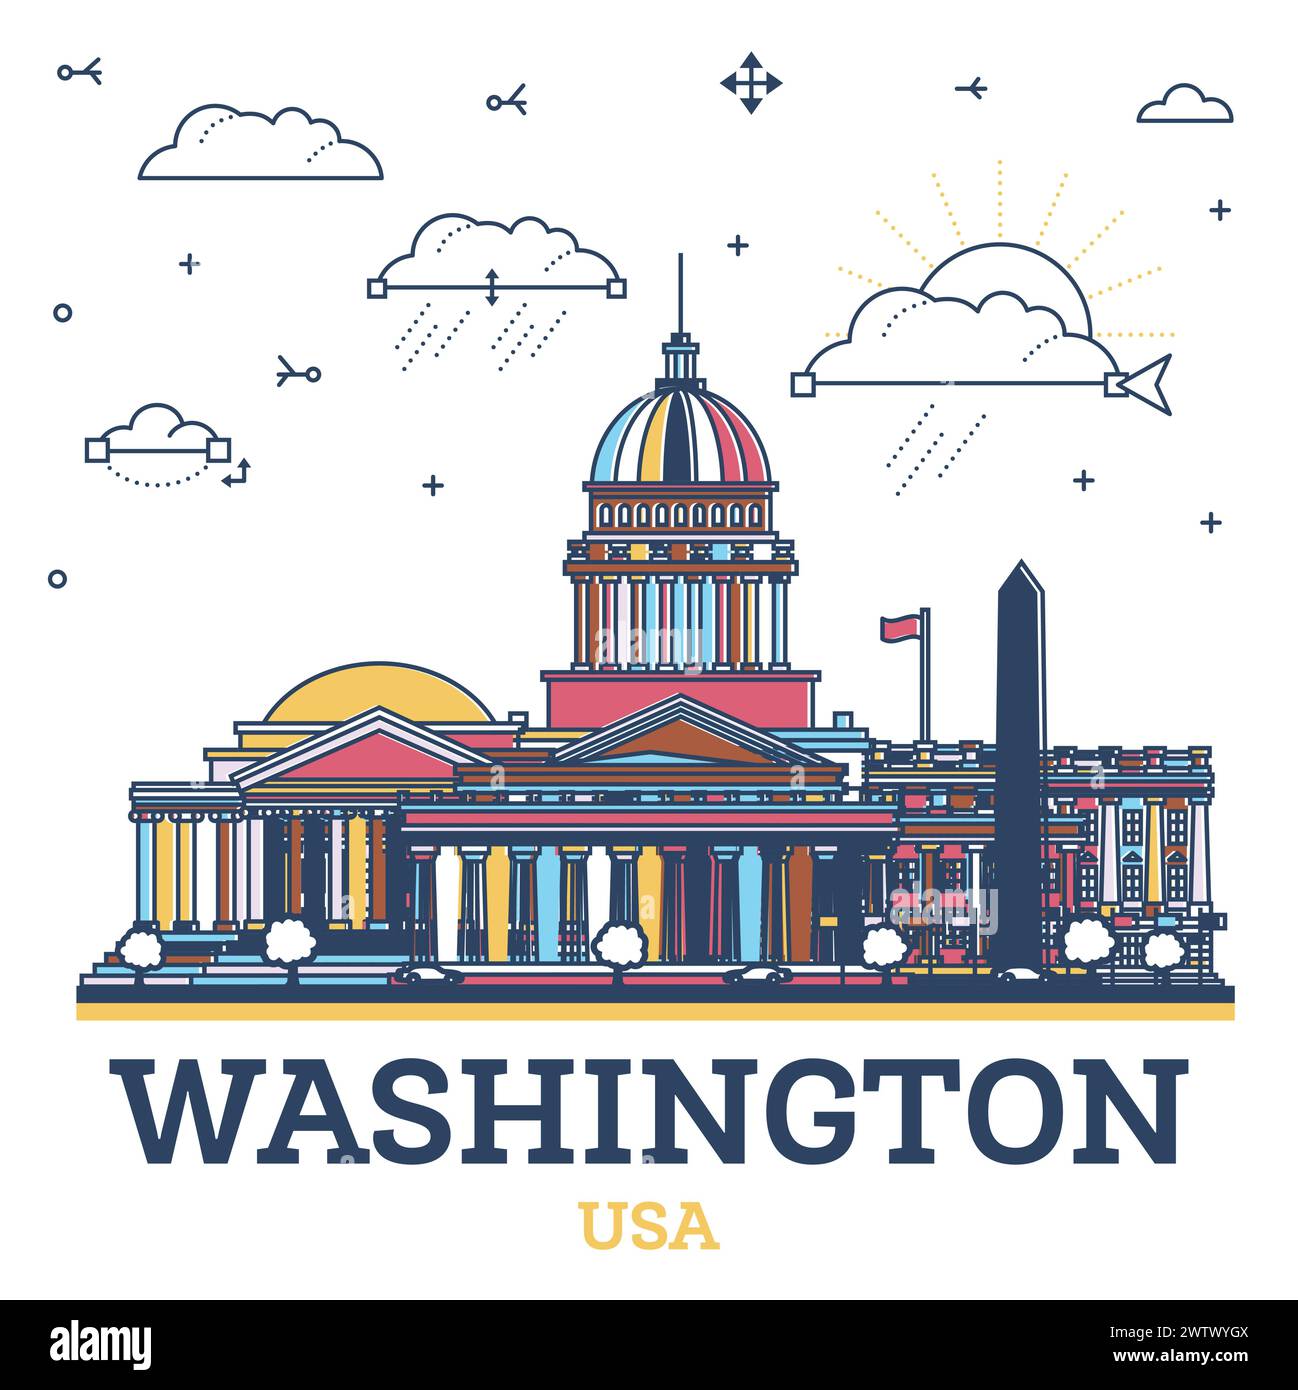 Delinea lo skyline di Washington DC USA City con edifici moderni colorati isolati sul bianco. Illustrazione vettoriale. Paesaggio urbano di Washington DC con monumenti storici. Illustrazione Vettoriale